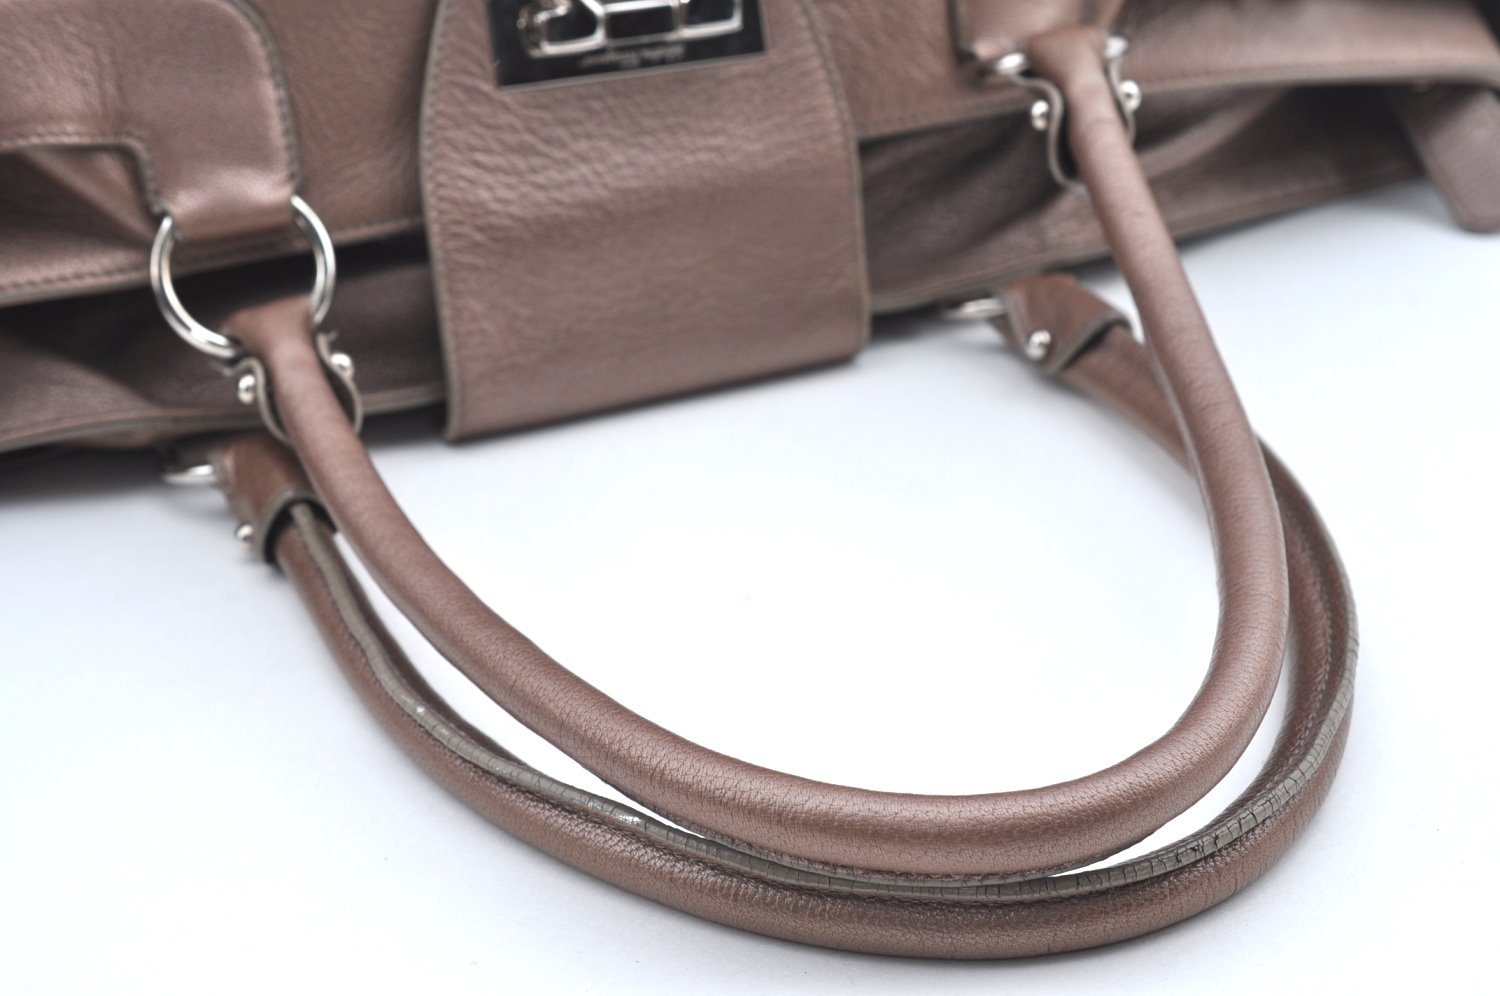 Authentic Ferragamo Gancini Leather Shoulder Tote Bag Pink Gold K5177